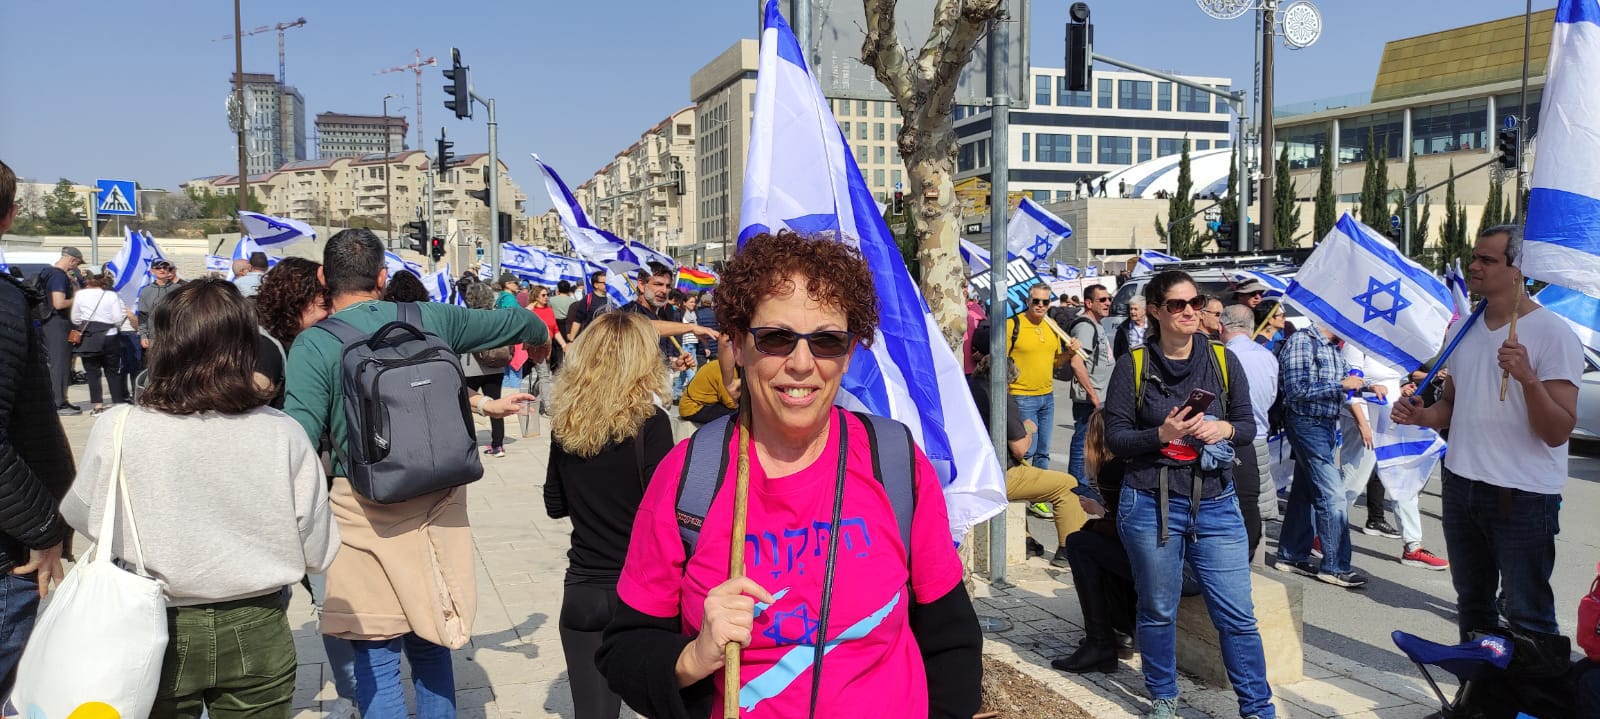 דינה שולמן, מפגינה מול משכן הכנסת, במחאה על הרפורמה במערכת המשפט (צילום: ניצן צבי כהן)